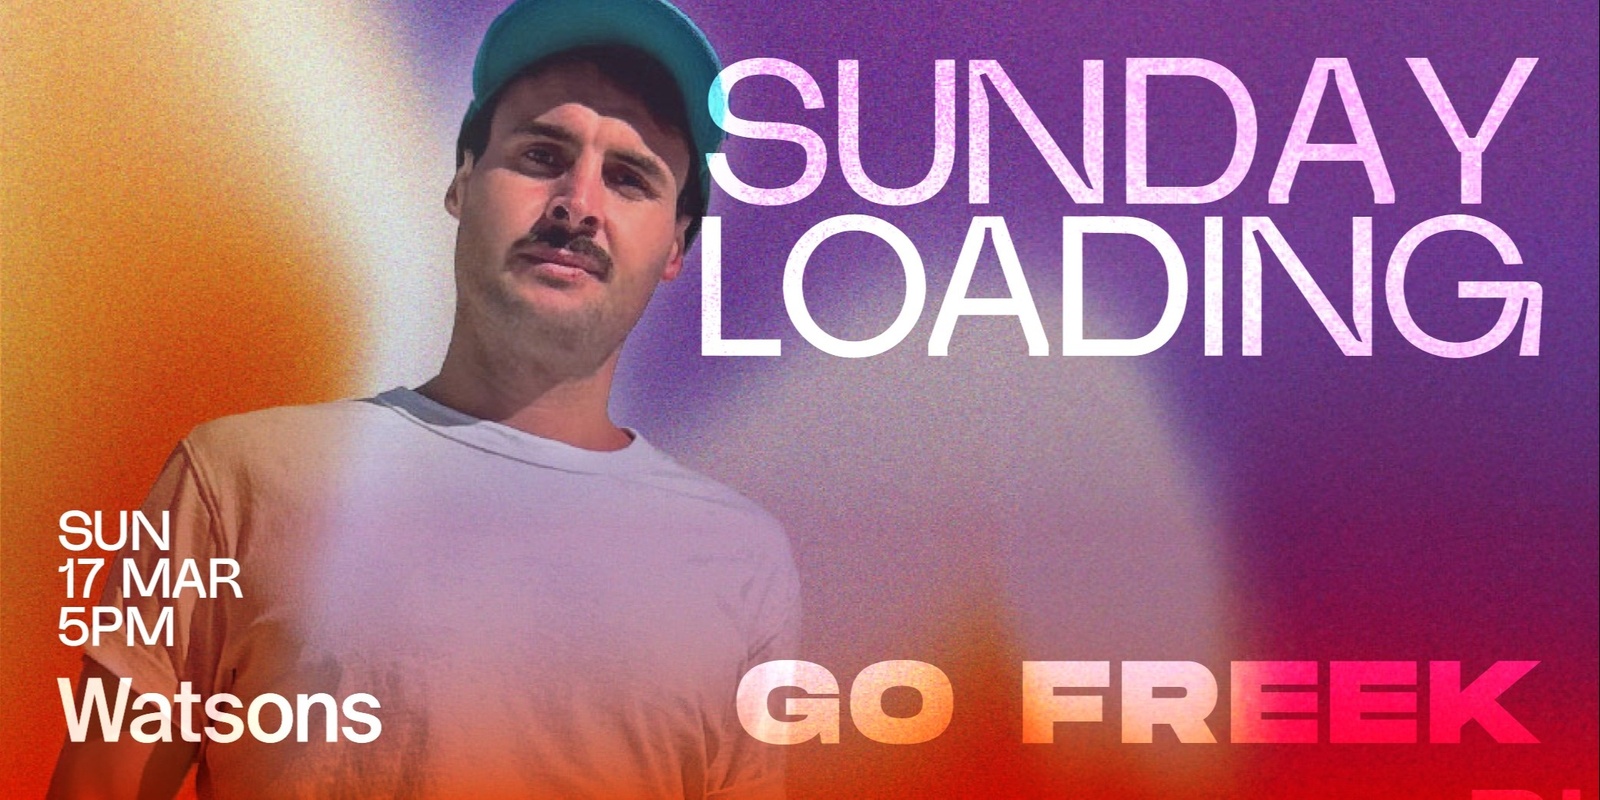 Banner image for Sunday Loading - Go Freek